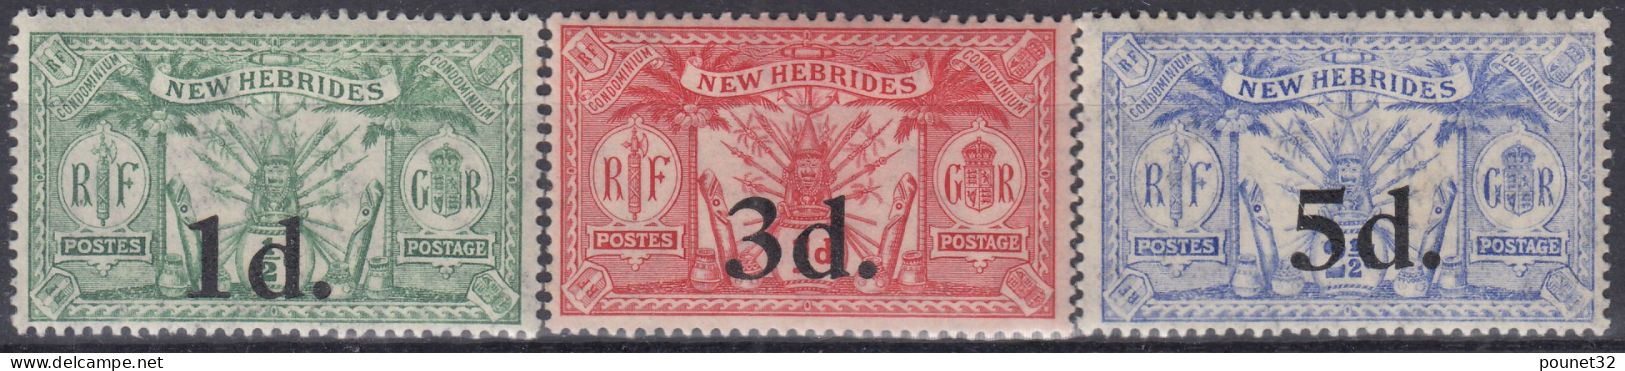 NEW HEBRIDES TIMBRES DE 1924 N° 77/79 NEUFS * GOMME AVEC CHARNIERE - TRES FRAIS - Nuovi